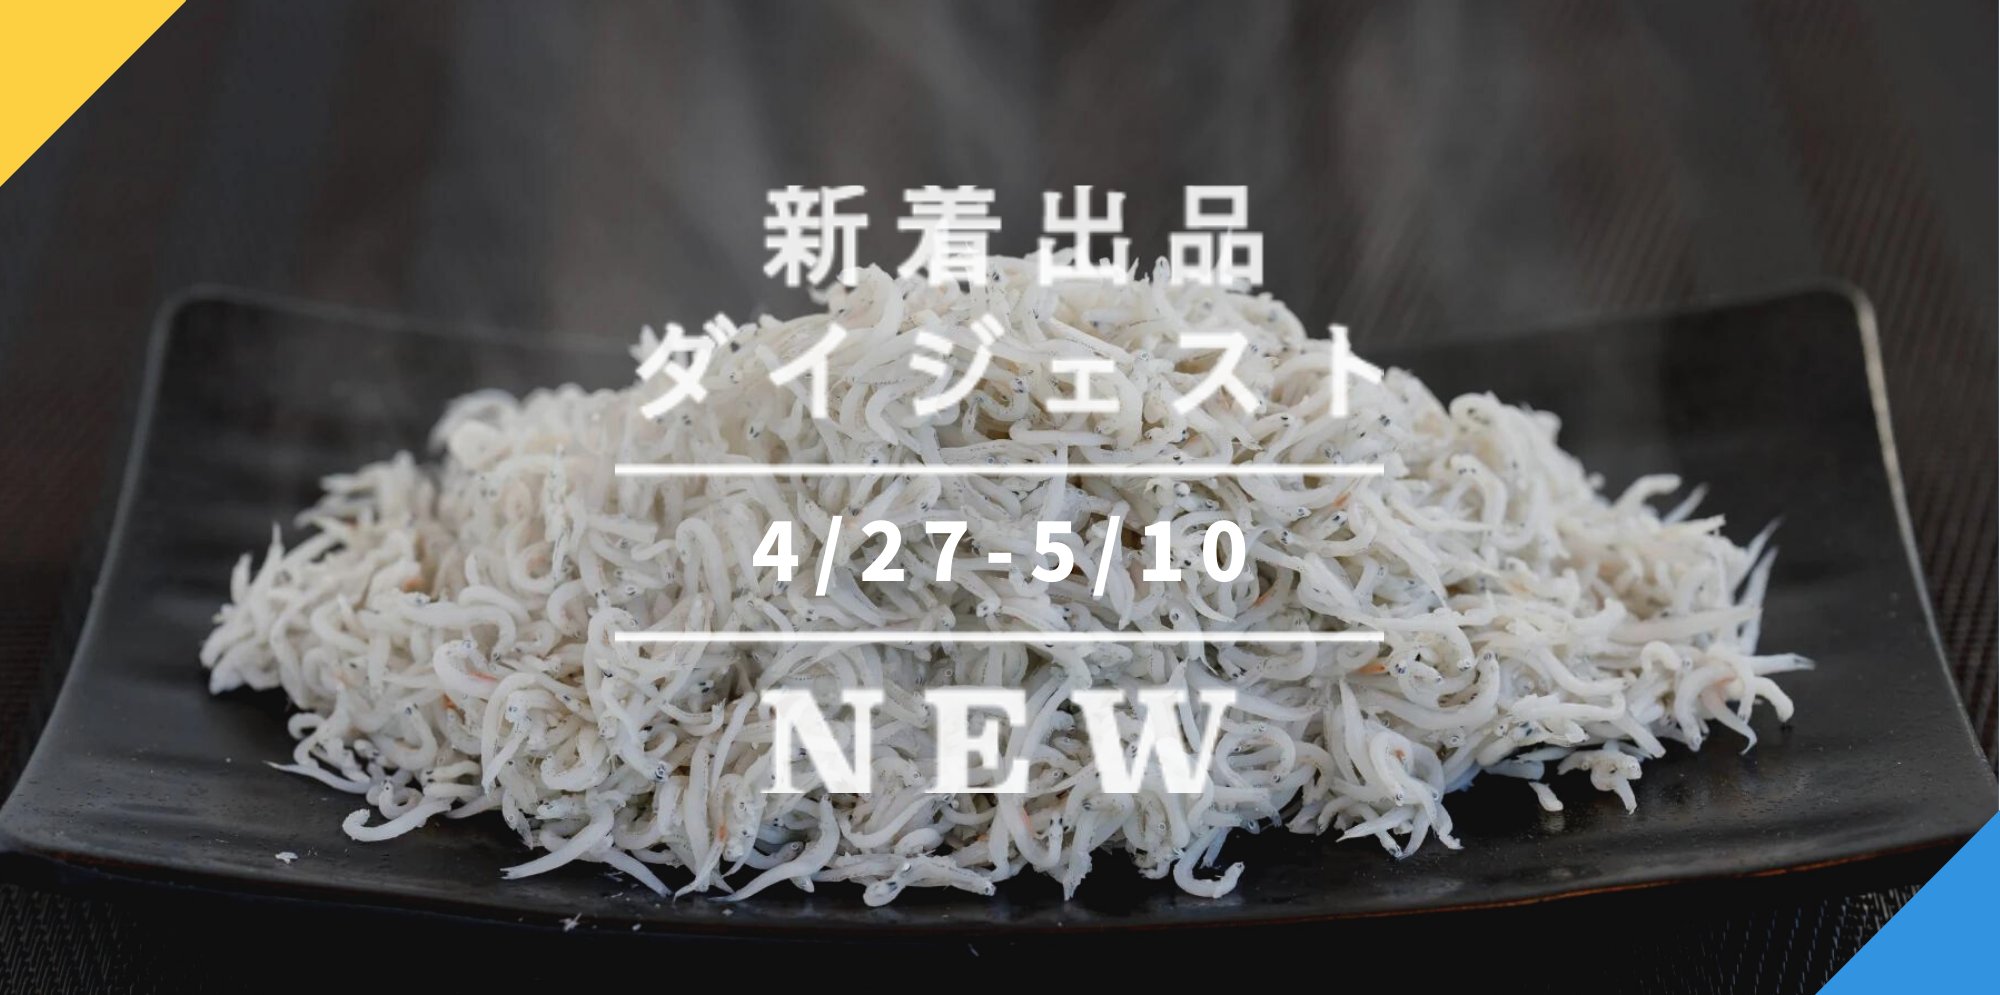 米/穀物【送料込み】広島県産コシヒカリ白米 24㎏ 令和2年産 米袋発送外袋破れ補修